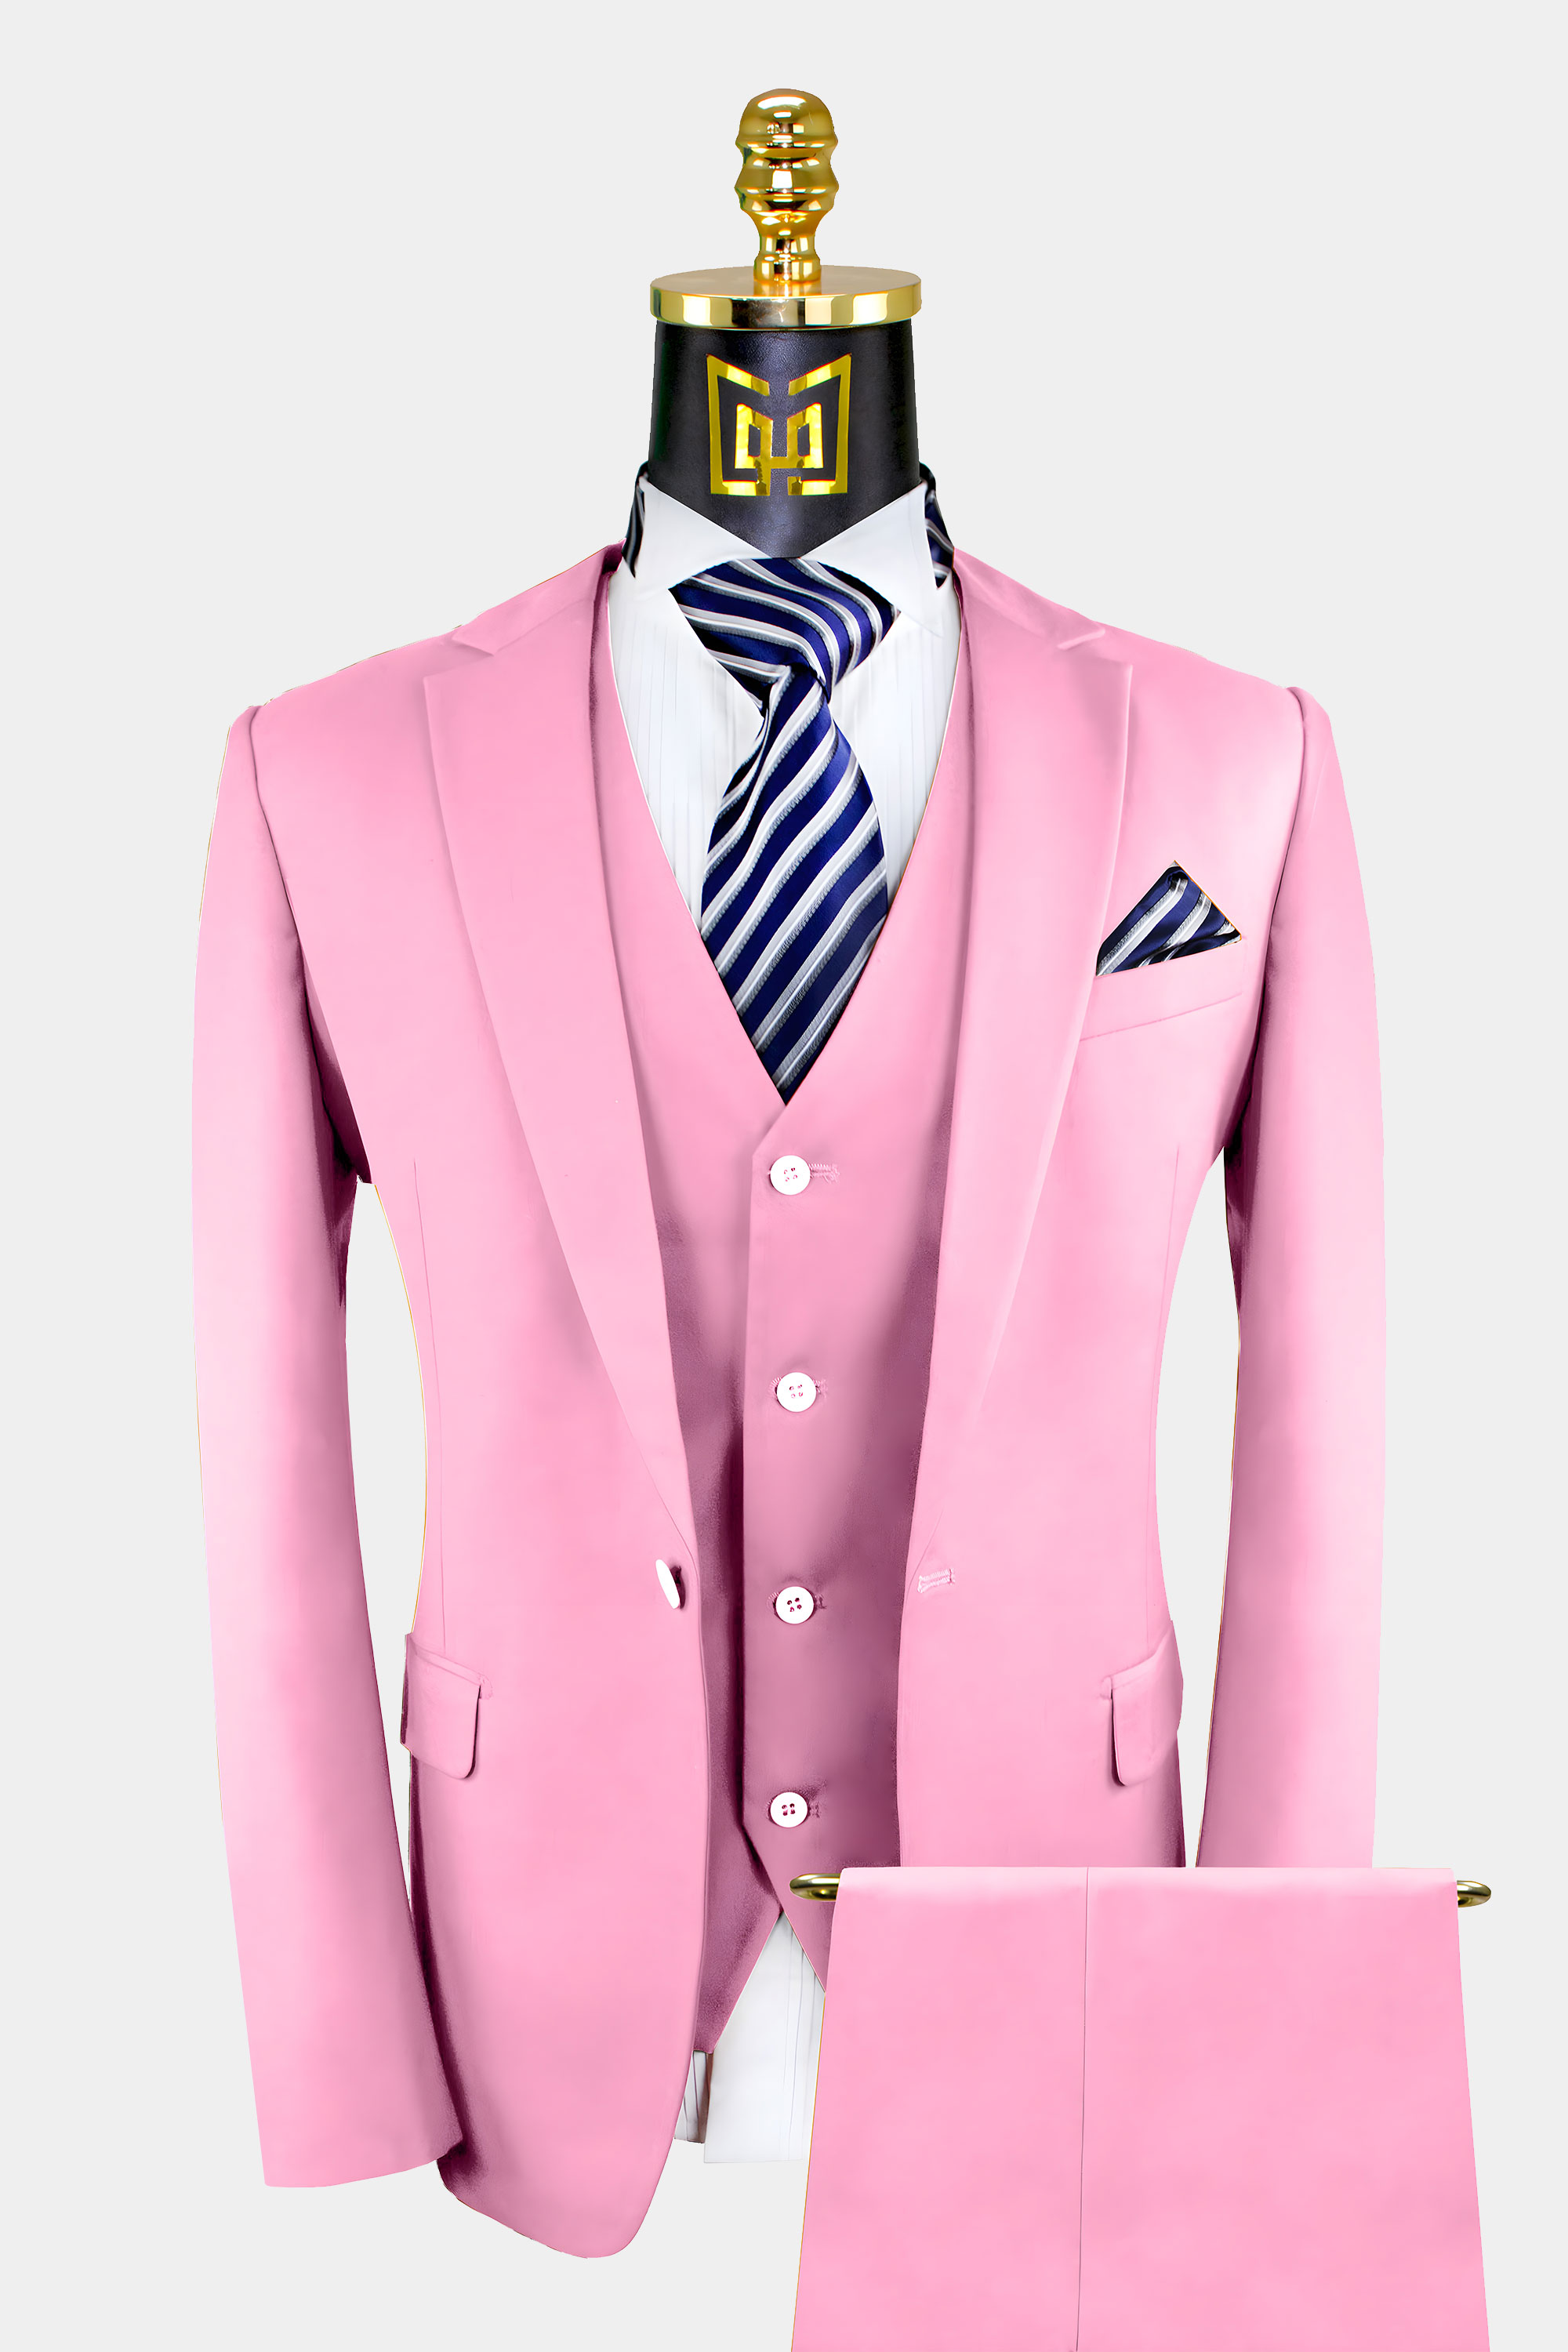 Light Pink Suit - 3 Piece | Gentleman's 